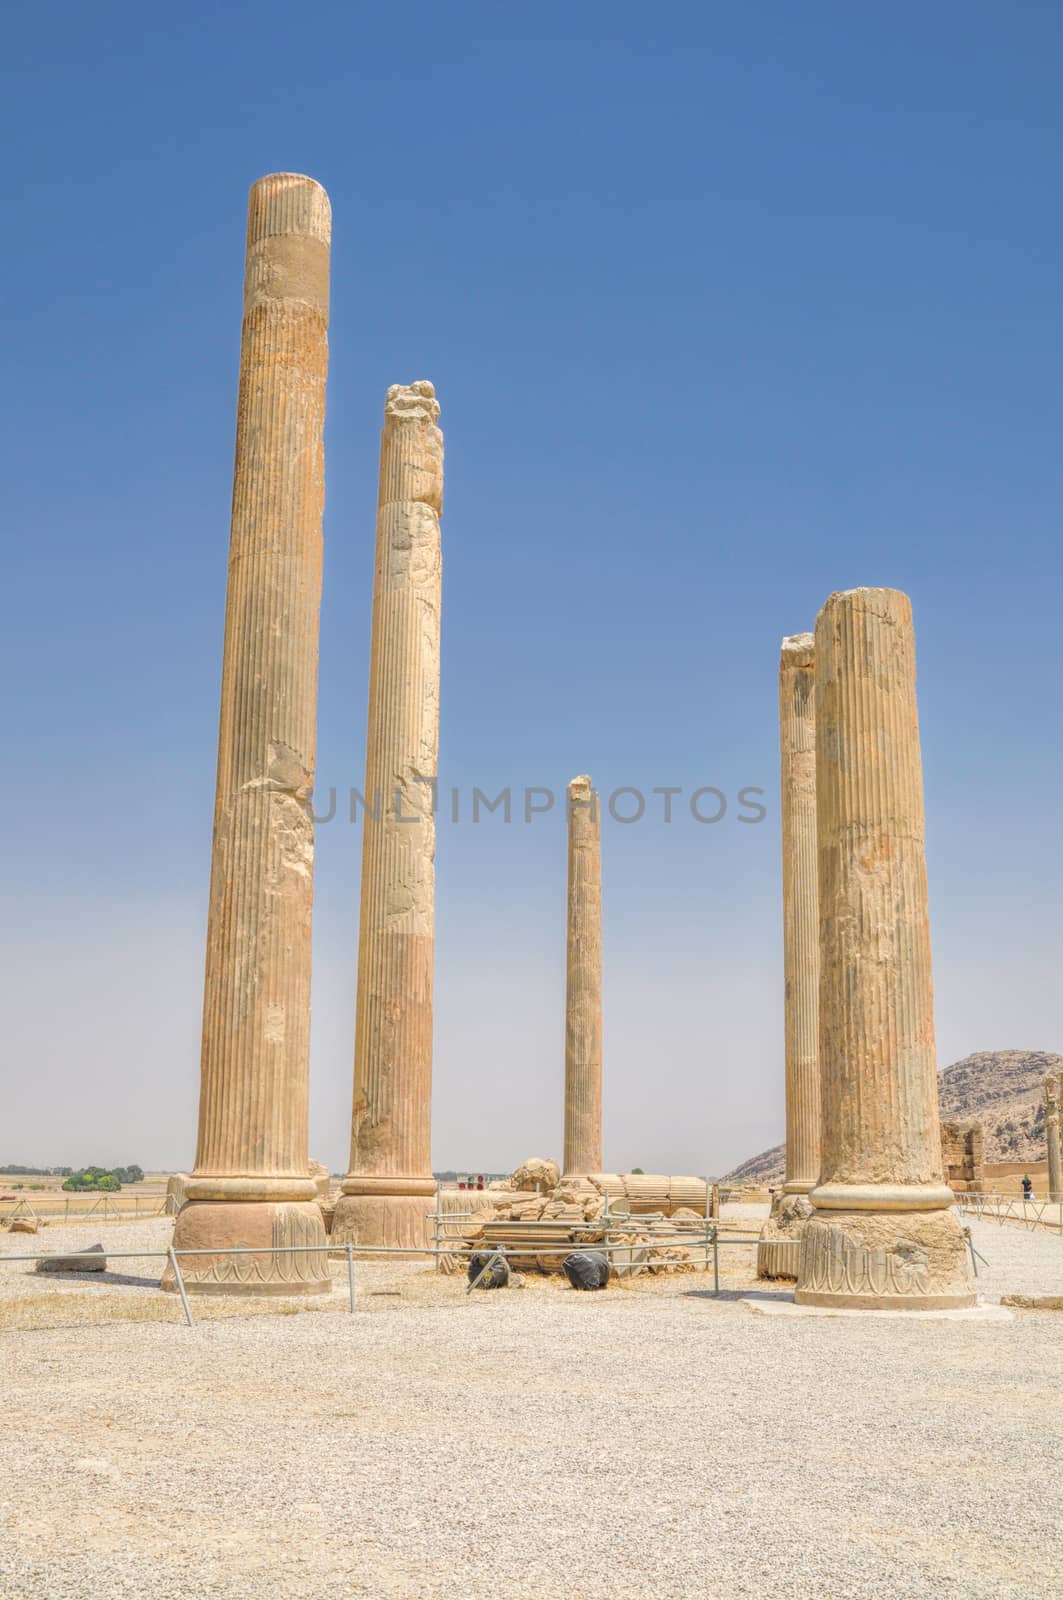 Pillars in ancient persian capital Persepolis in current Iran